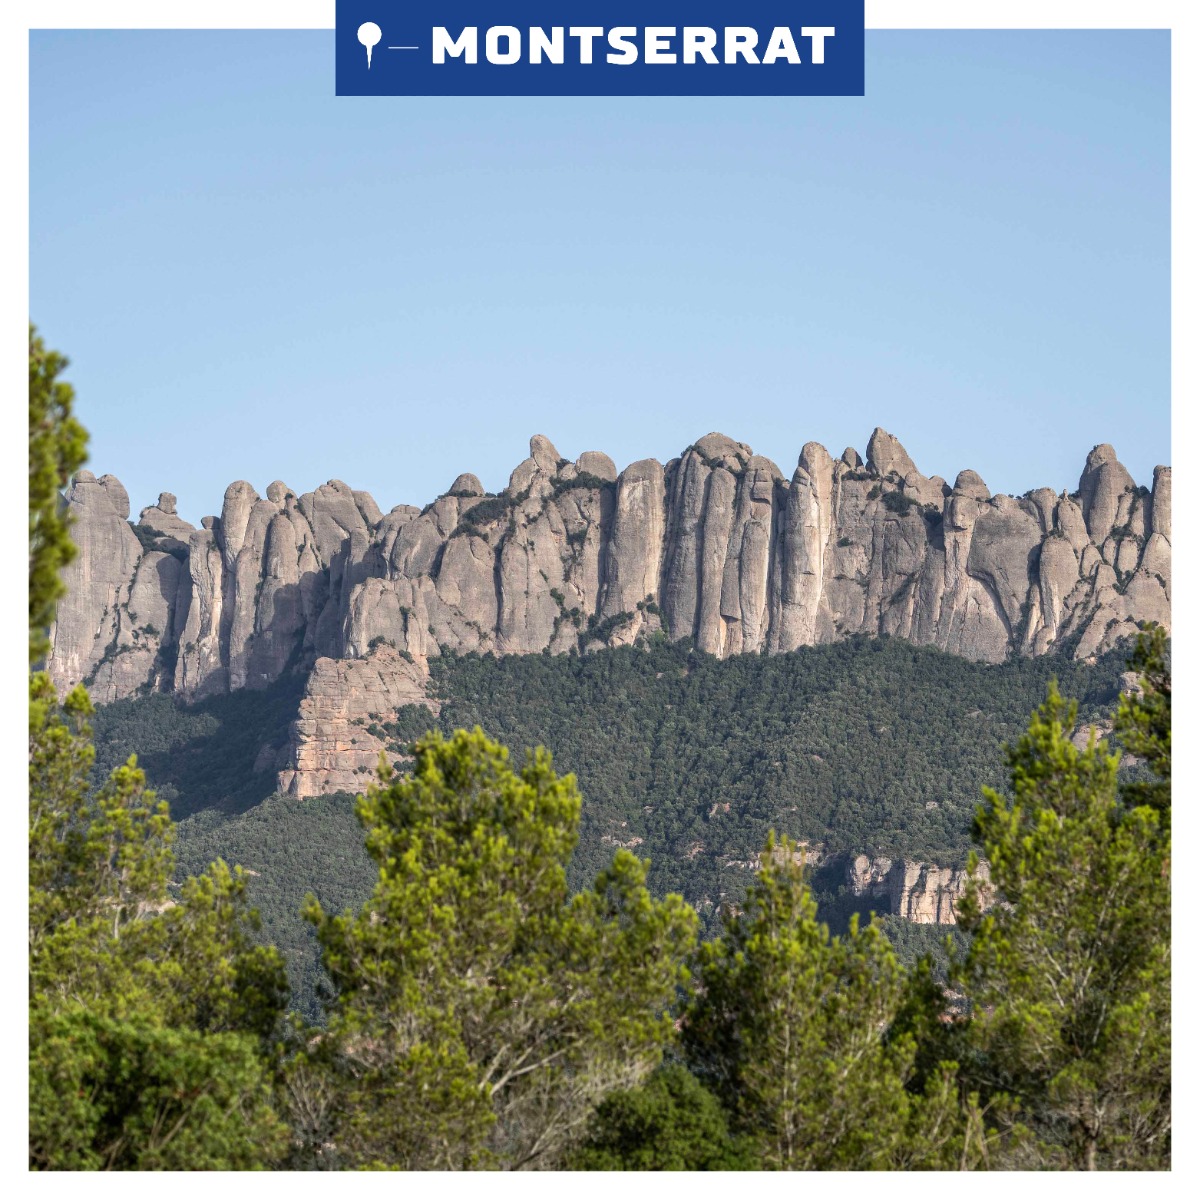 De majestueuze Montserrat-bergketen met zijn grillige, kalkstenen pieken, gehuld in nevel, straalt een aura van mysterie uit tegen een achtergrond van serene, groene heuvels.